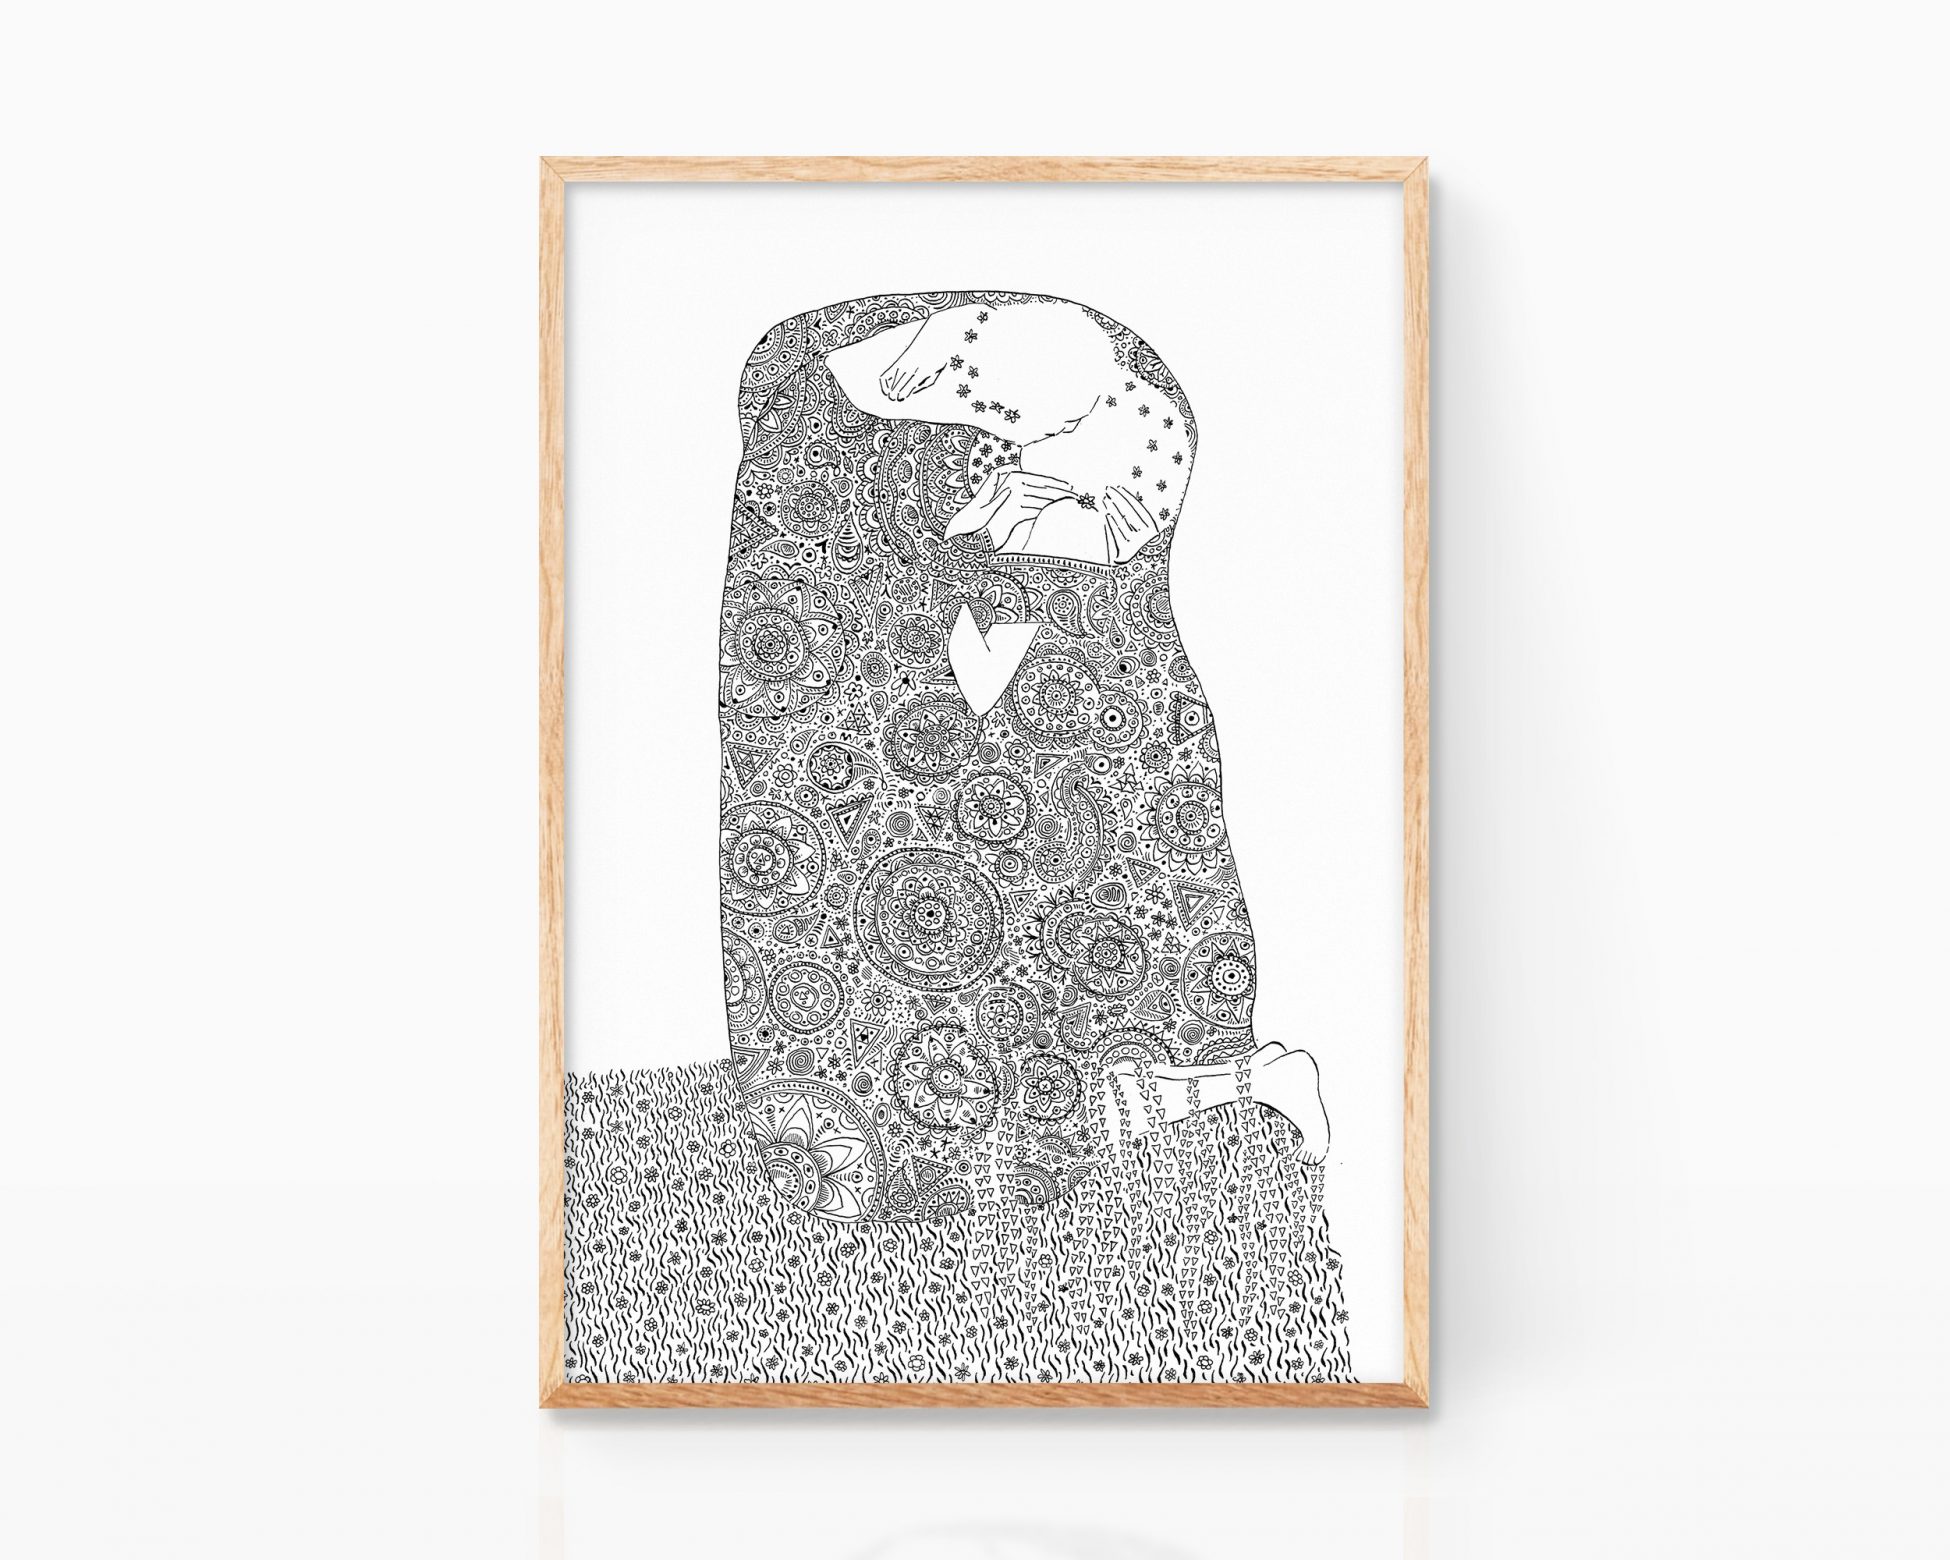 Ilustración El Beso de Klimt. Cuadro decorativo para enmarcar con un dibujo en blanco y negro y línea minimalista del artista Gustav Klimt. Prints con versiones de art decó disponibles para comprar online.